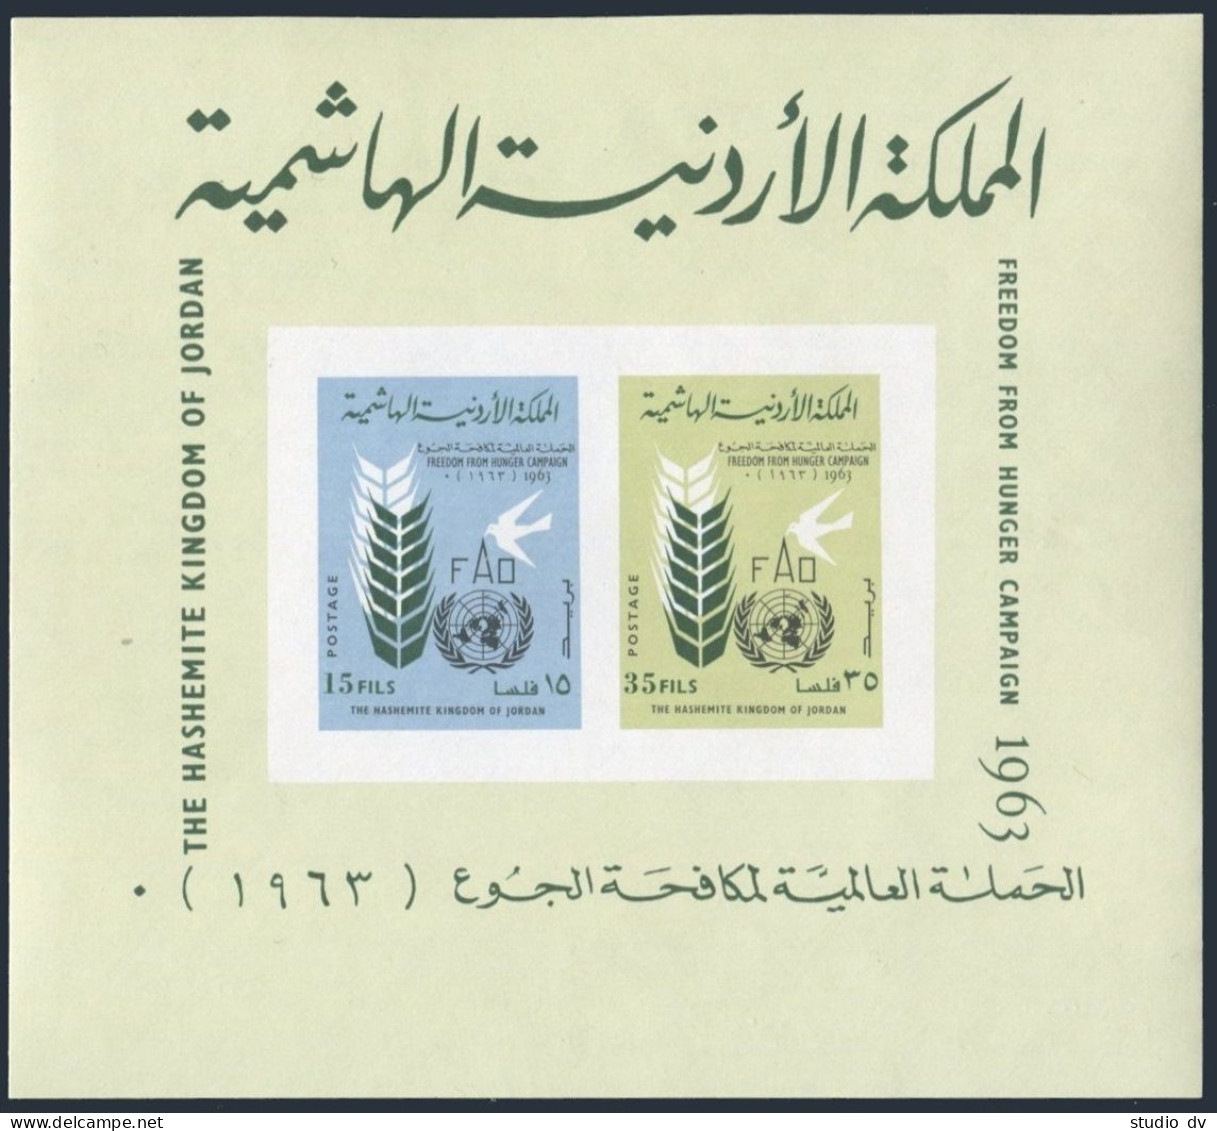 Jordan 399a,399a Imperf,MNH. Michel Bl.4A-4B. FAO Freedom From Hunger, 1963. - Jordanien